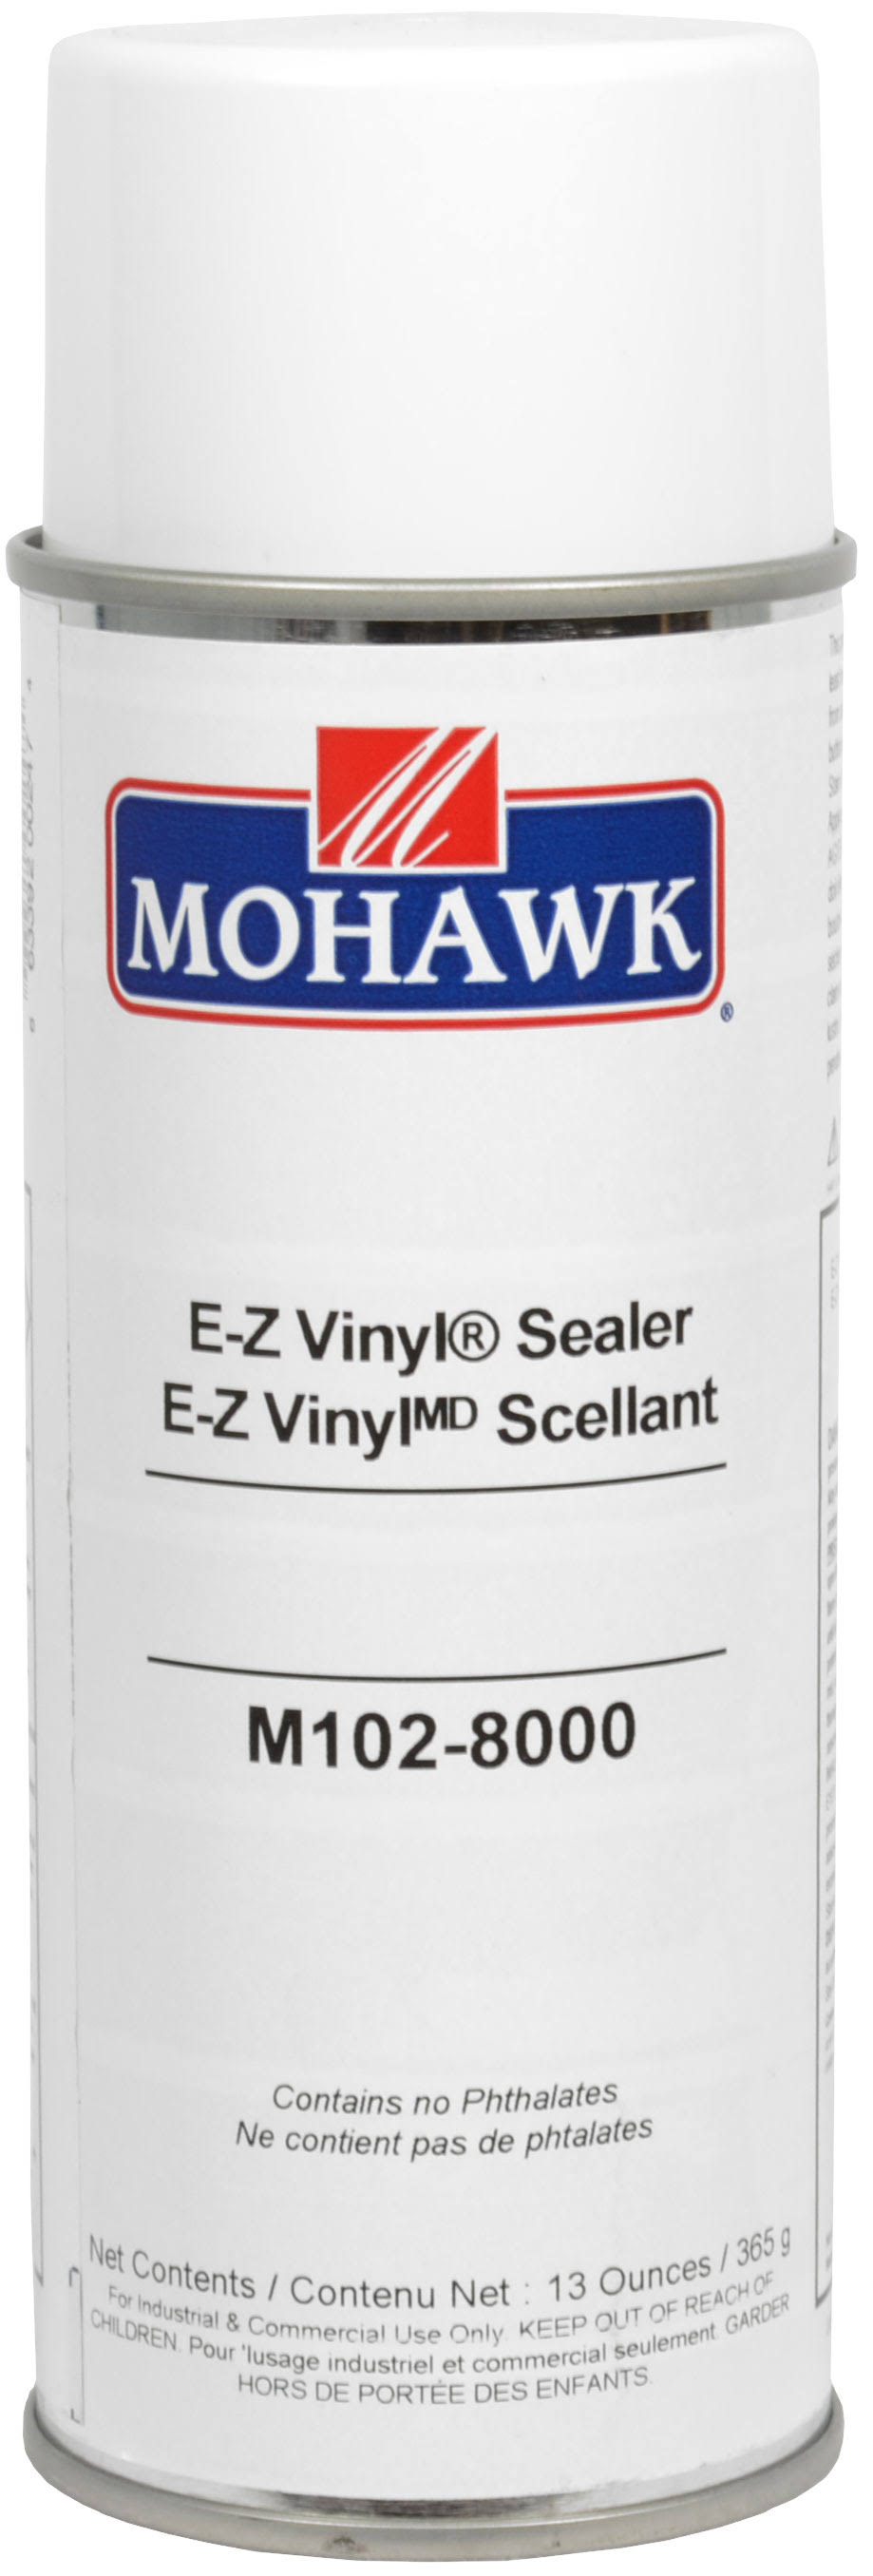 Mohawk E-Z Vinyl Sealer